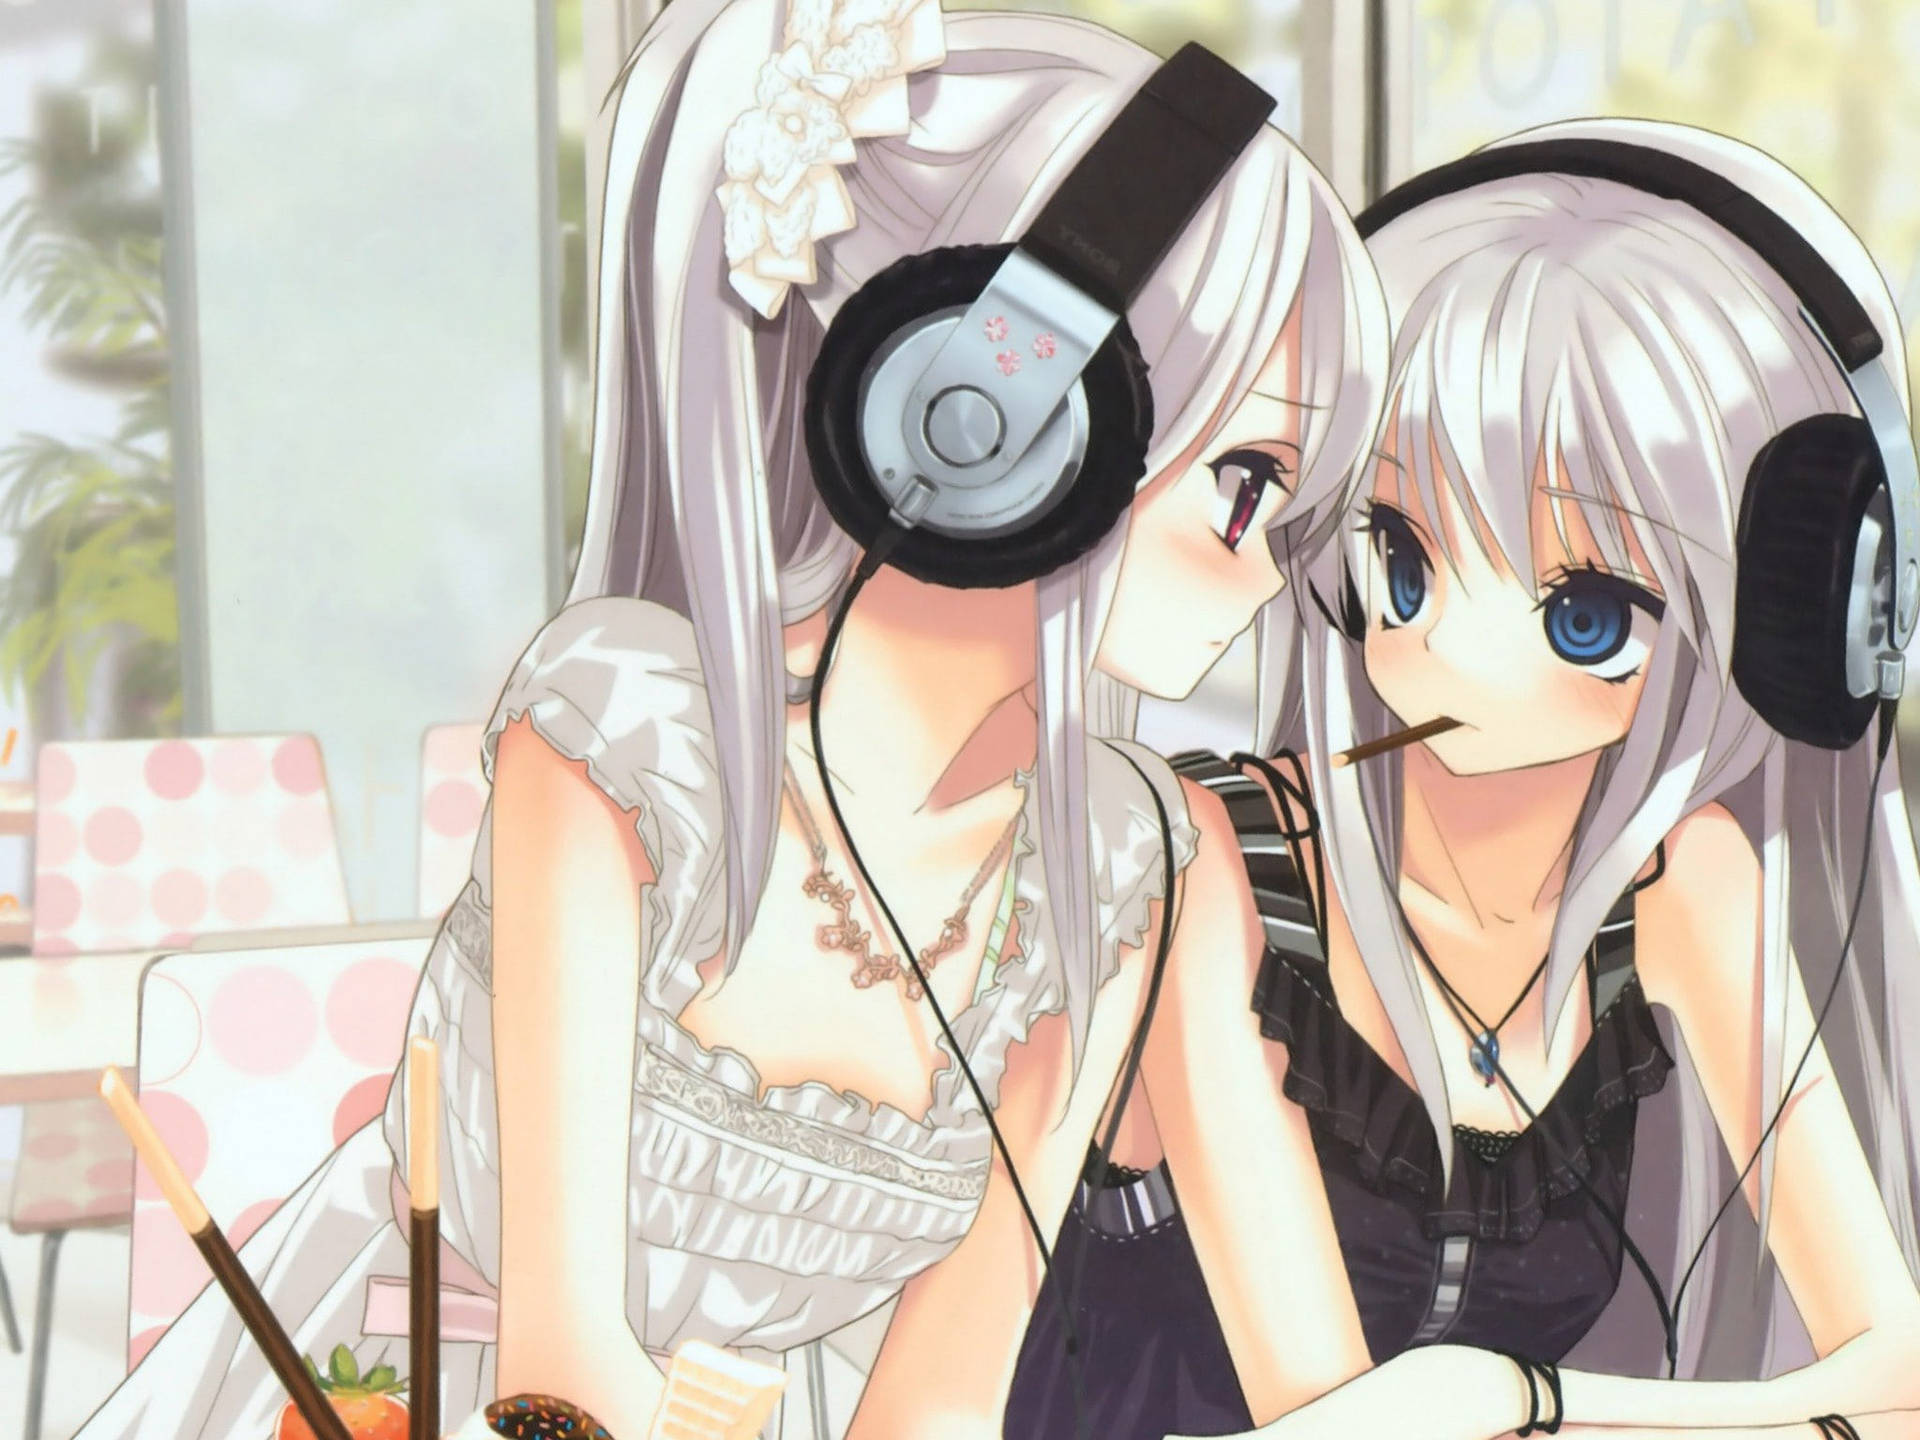 Music Lover Anime Lesbians Wallpaper